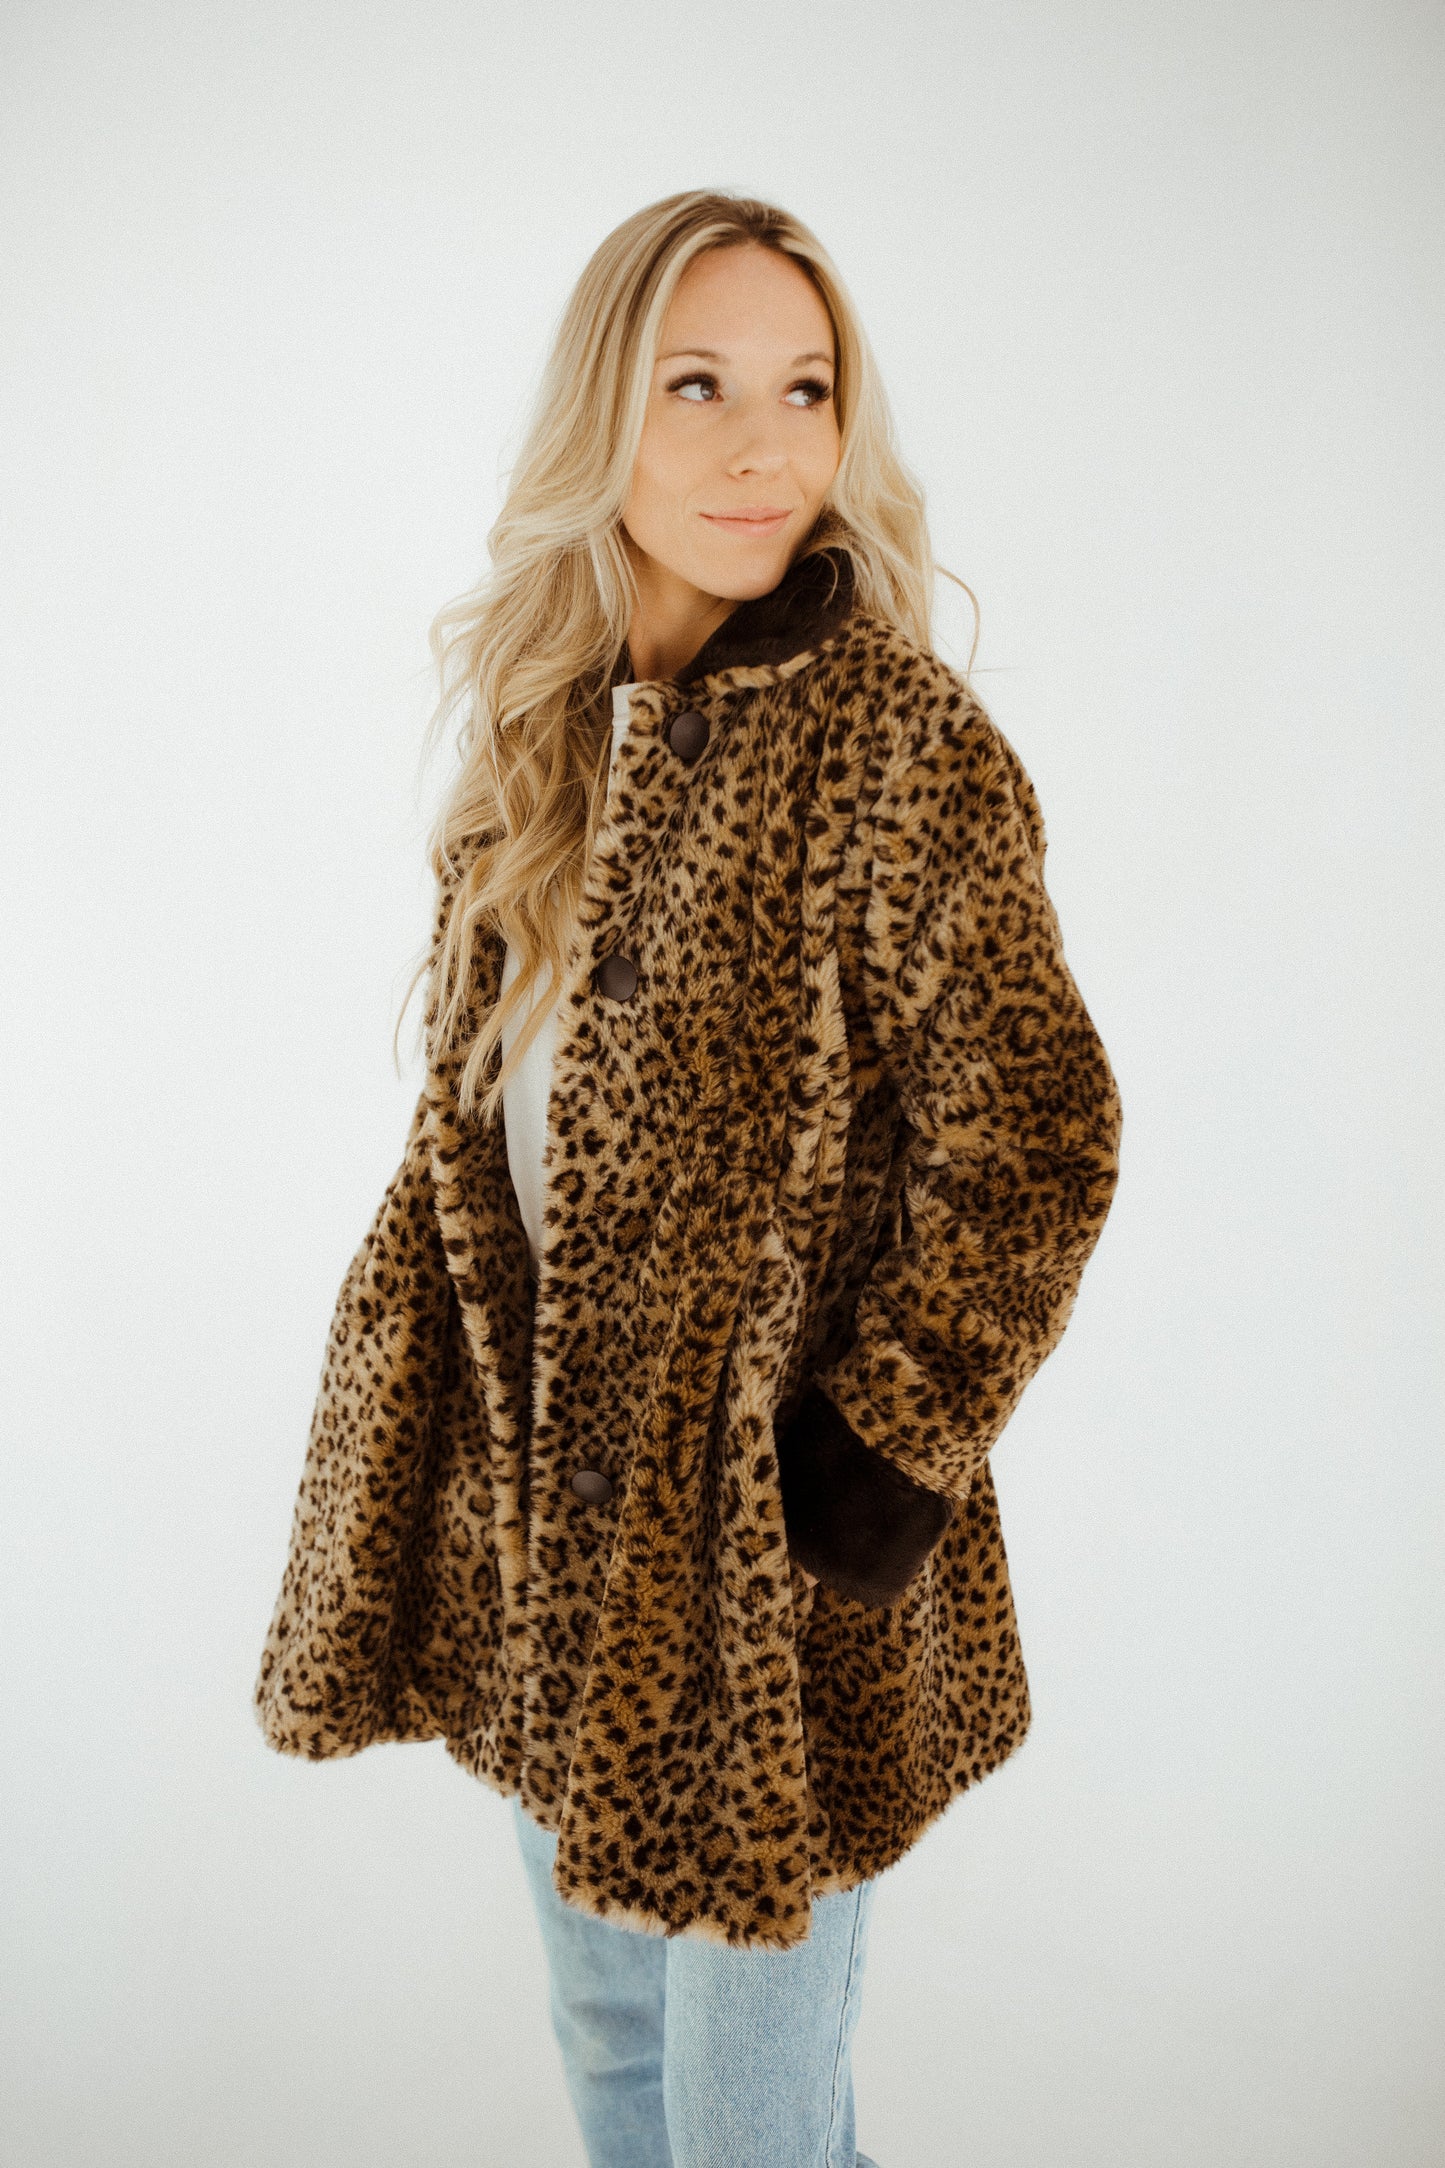 The Cheetah Coat